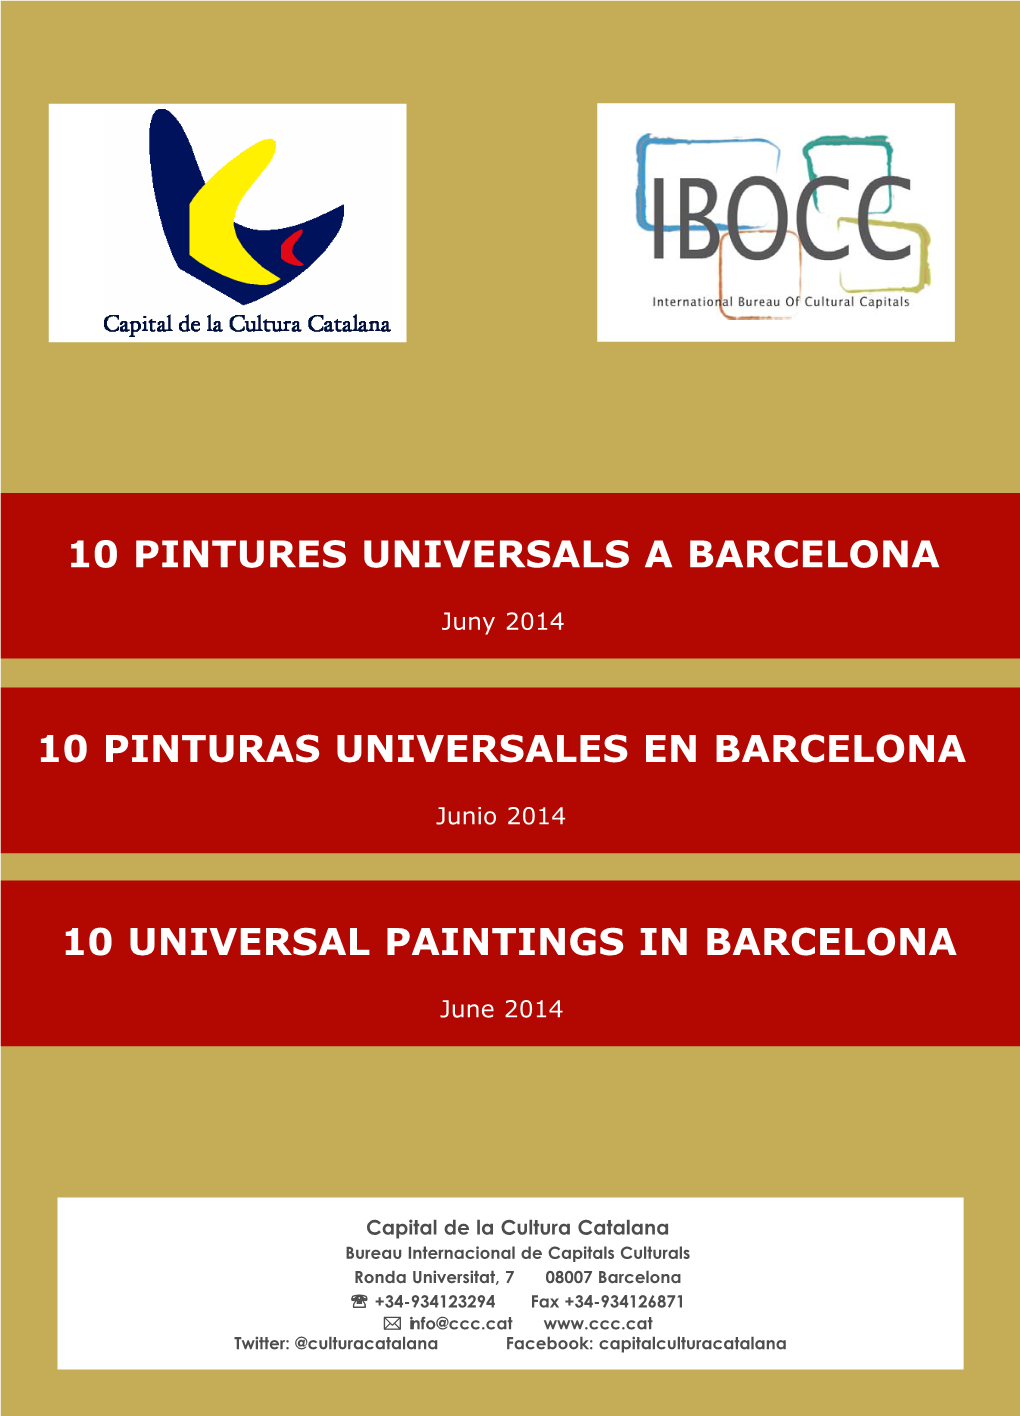 10 Pintures Universals a Barcelona